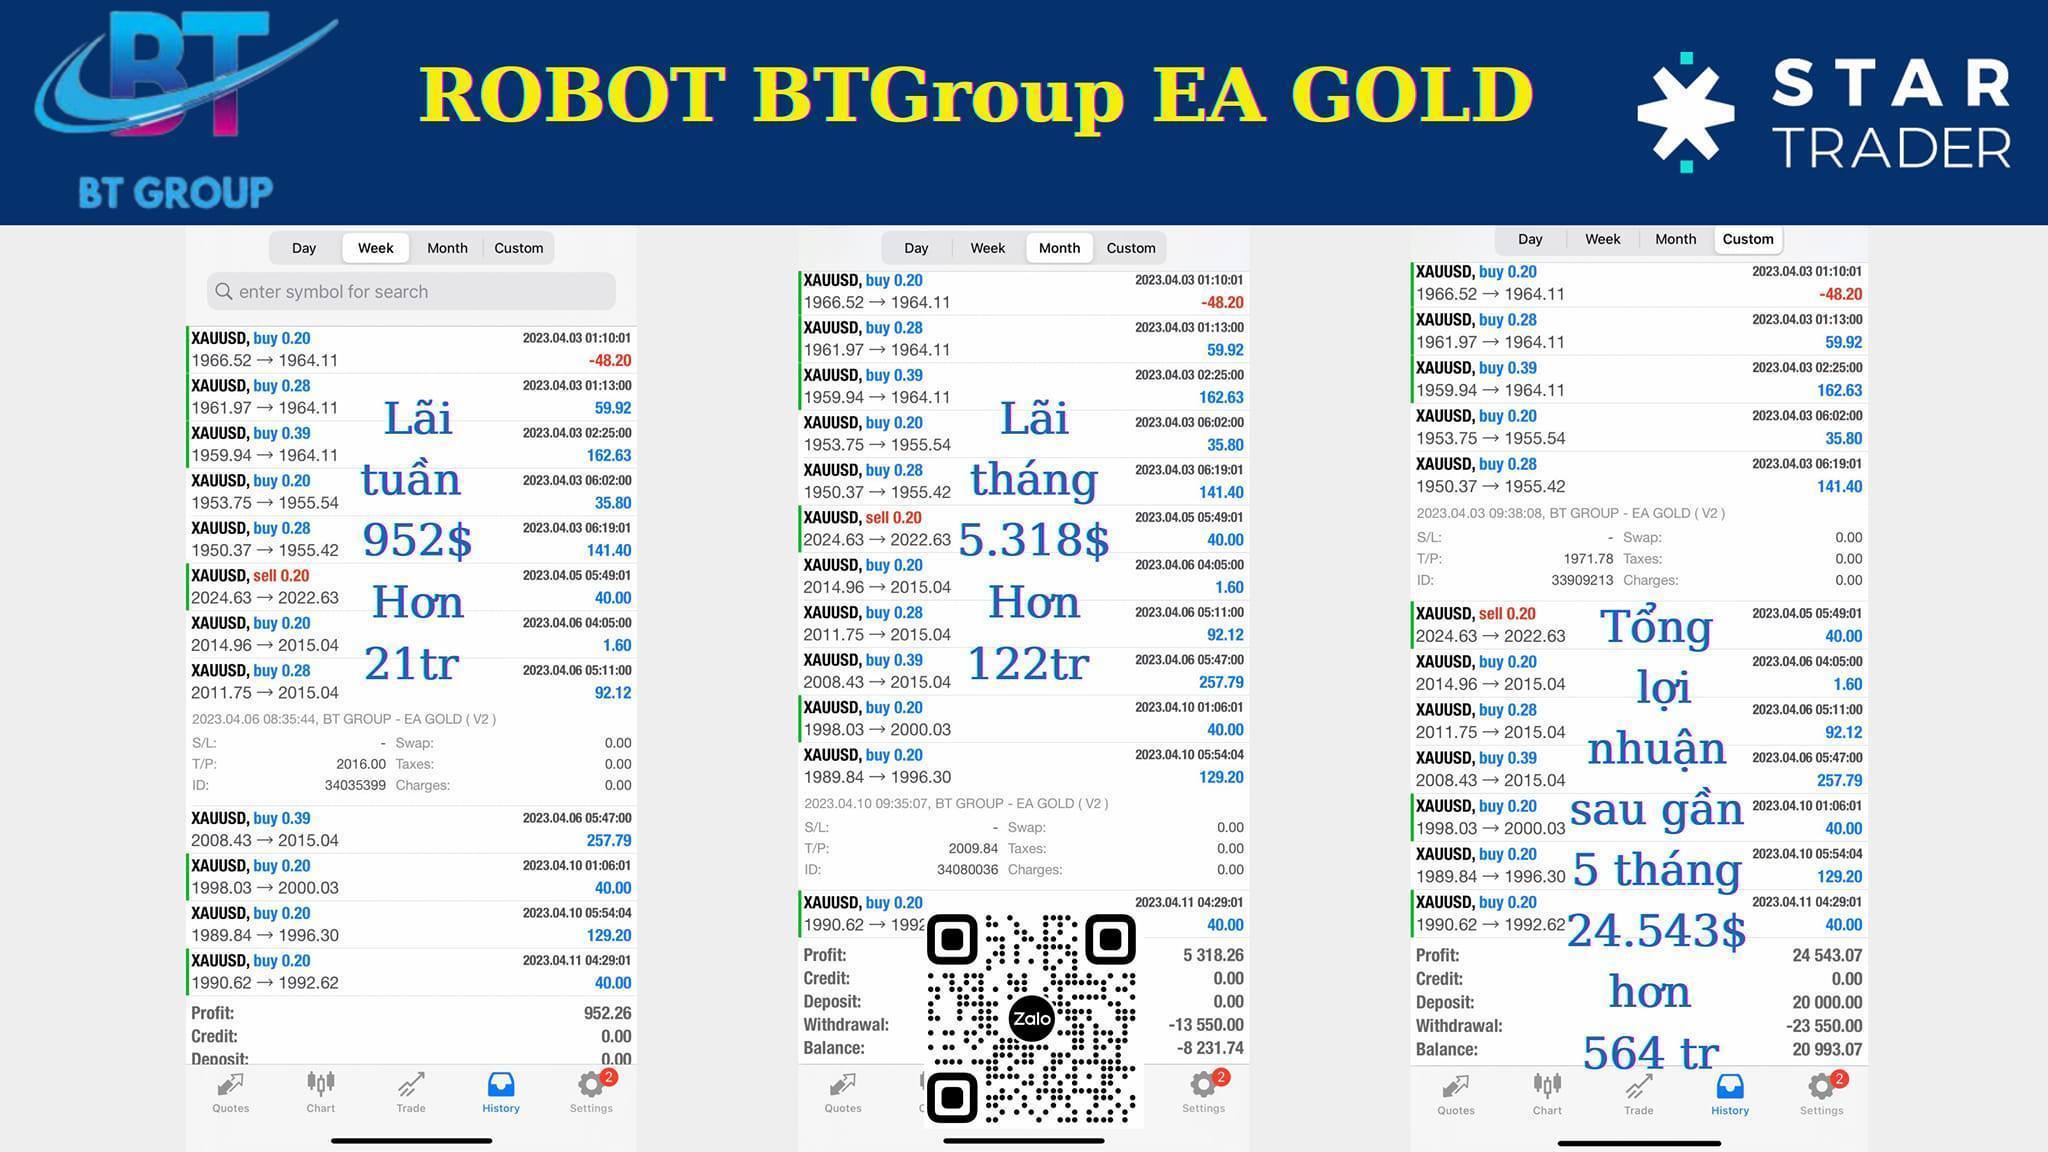 ROBOT BTGROUP EA GOLD ( nhận quà trị  giá 400 khi dùng robot)